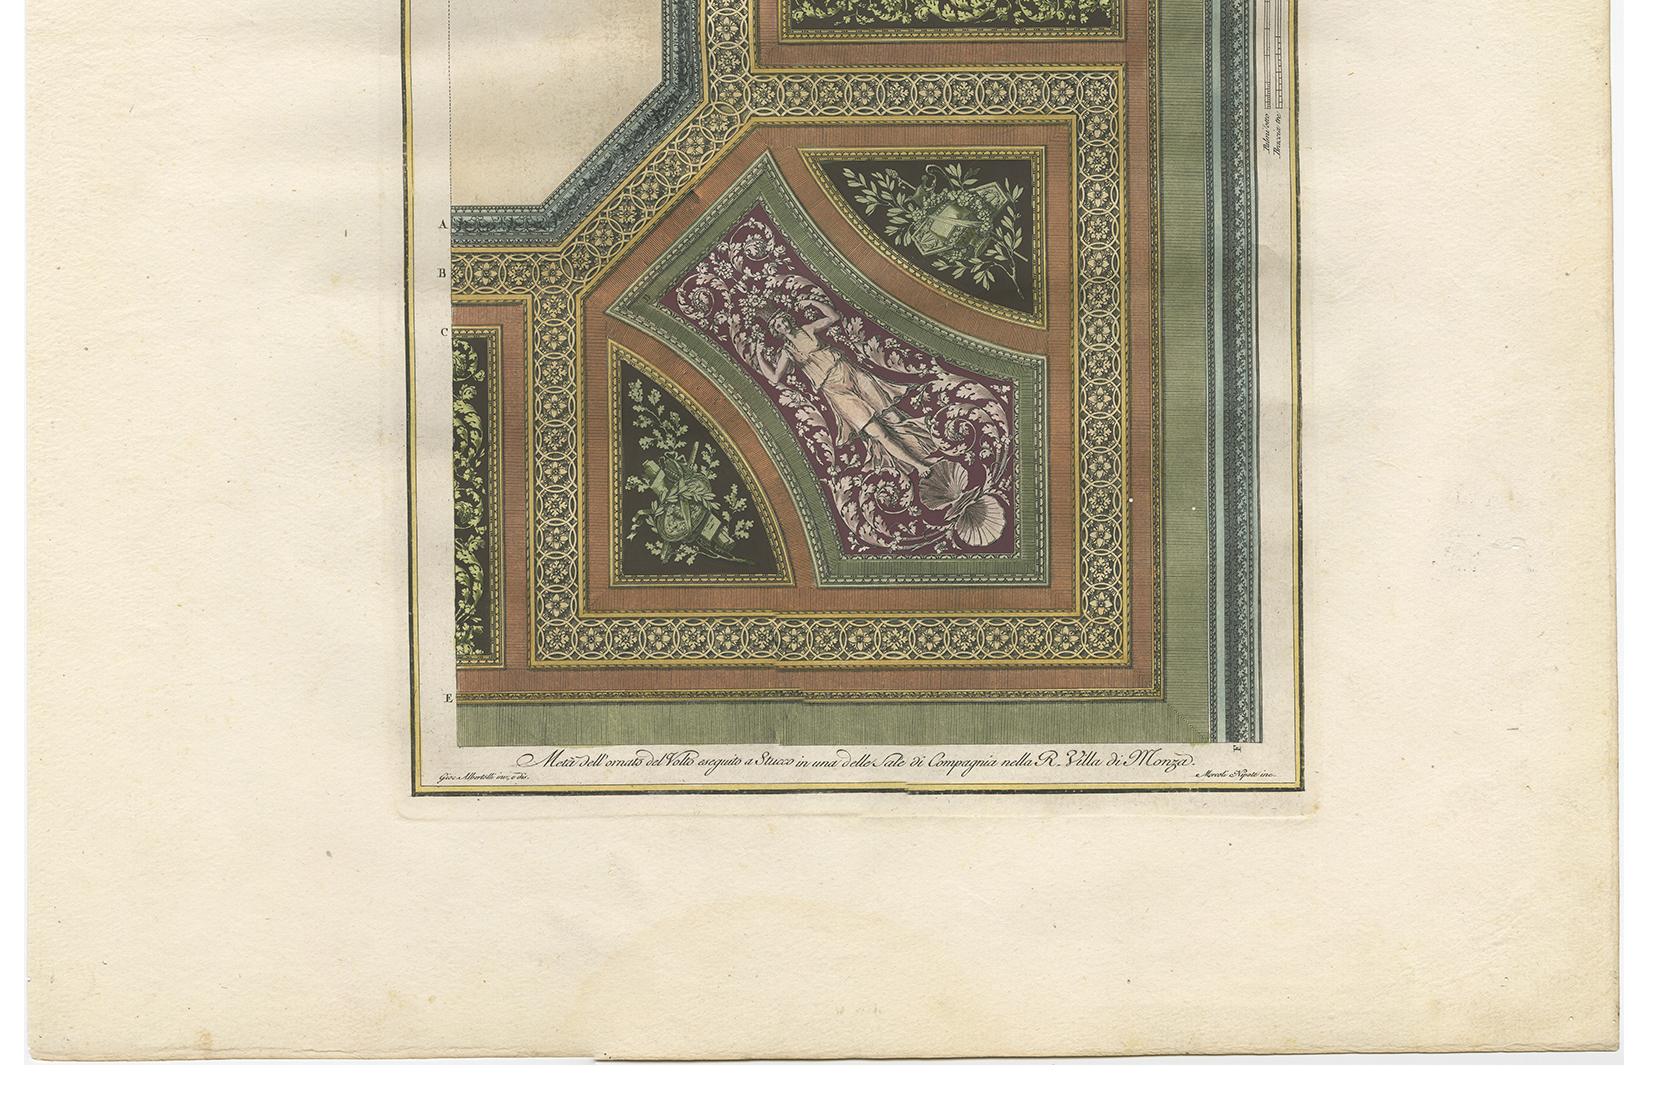 Antiker Architekturdruck von Ornamenten mit dem Titel 'Meta dell'ornato del volto esequito a Stucco in una delle Sale di Compagnia (..)'. Dieser Druck stammt aus 